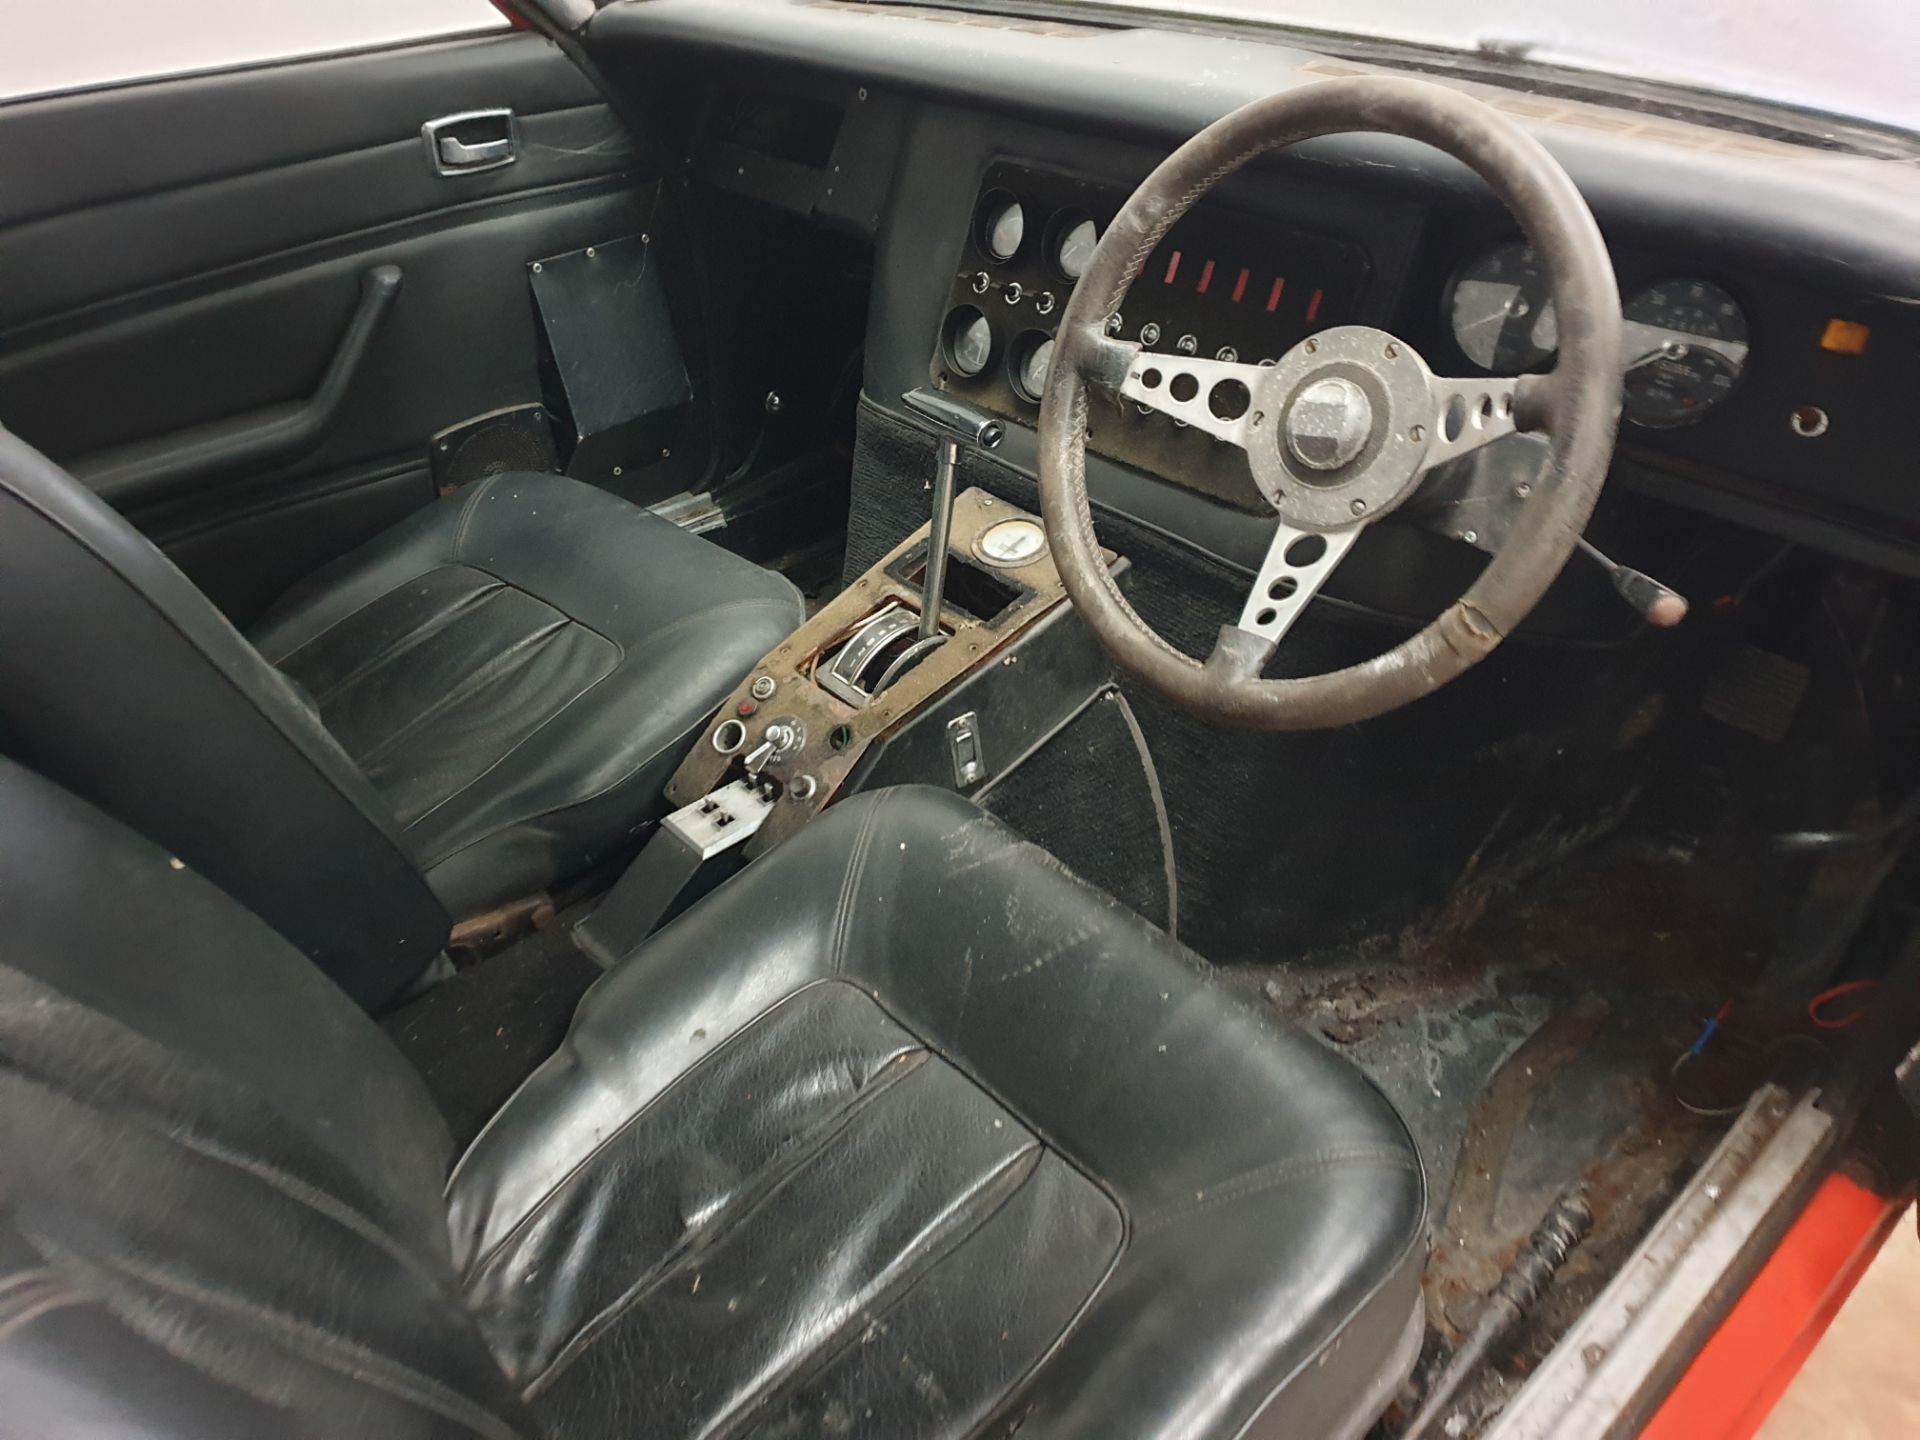 Ford Capri "Hocus Pocus" Drag Car - Image 20 of 24